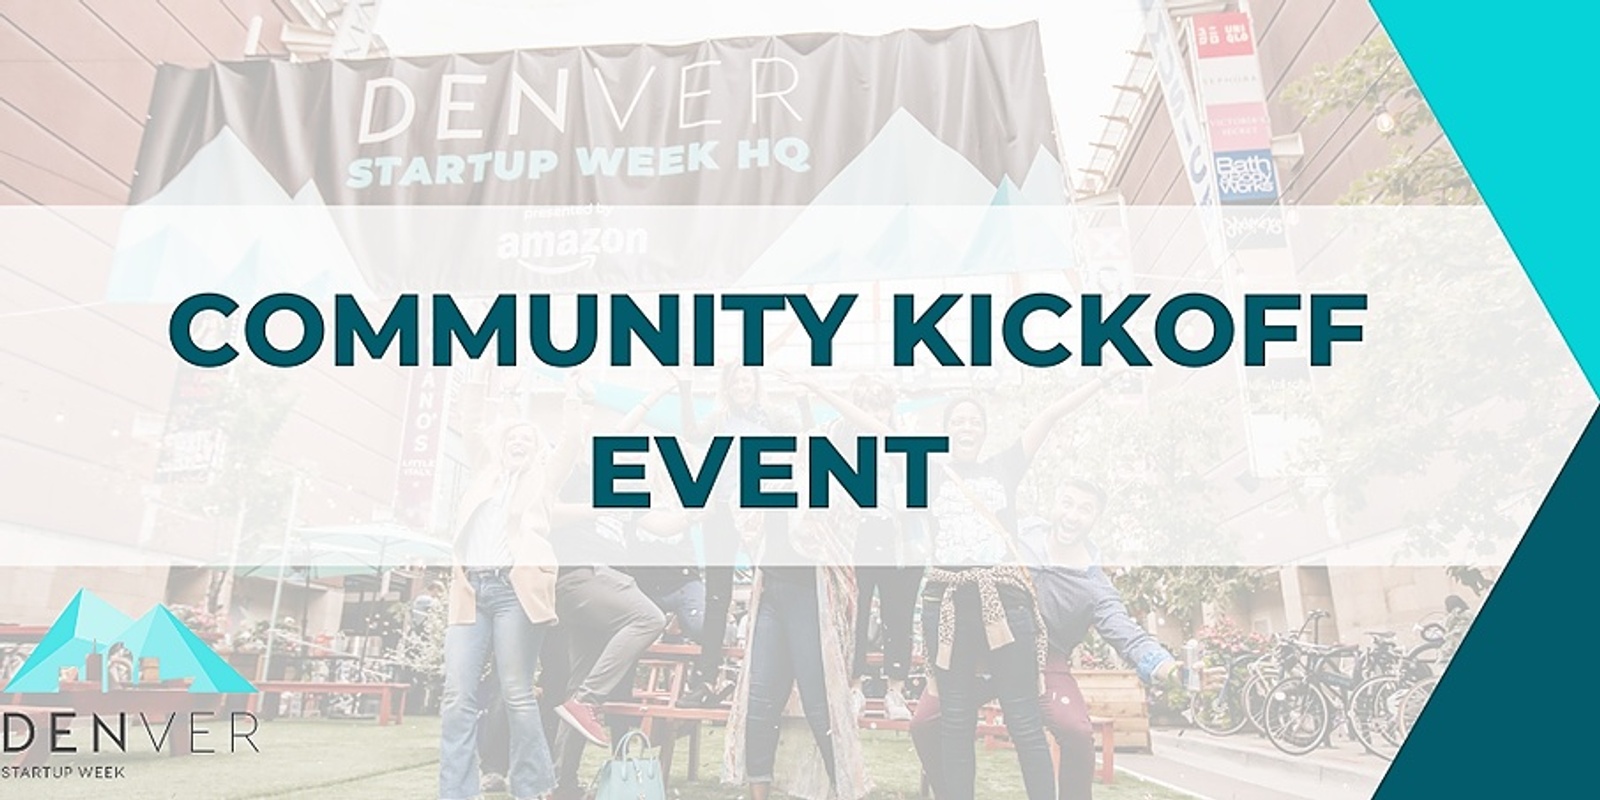 Denver Startup Week Community Kickoff Event